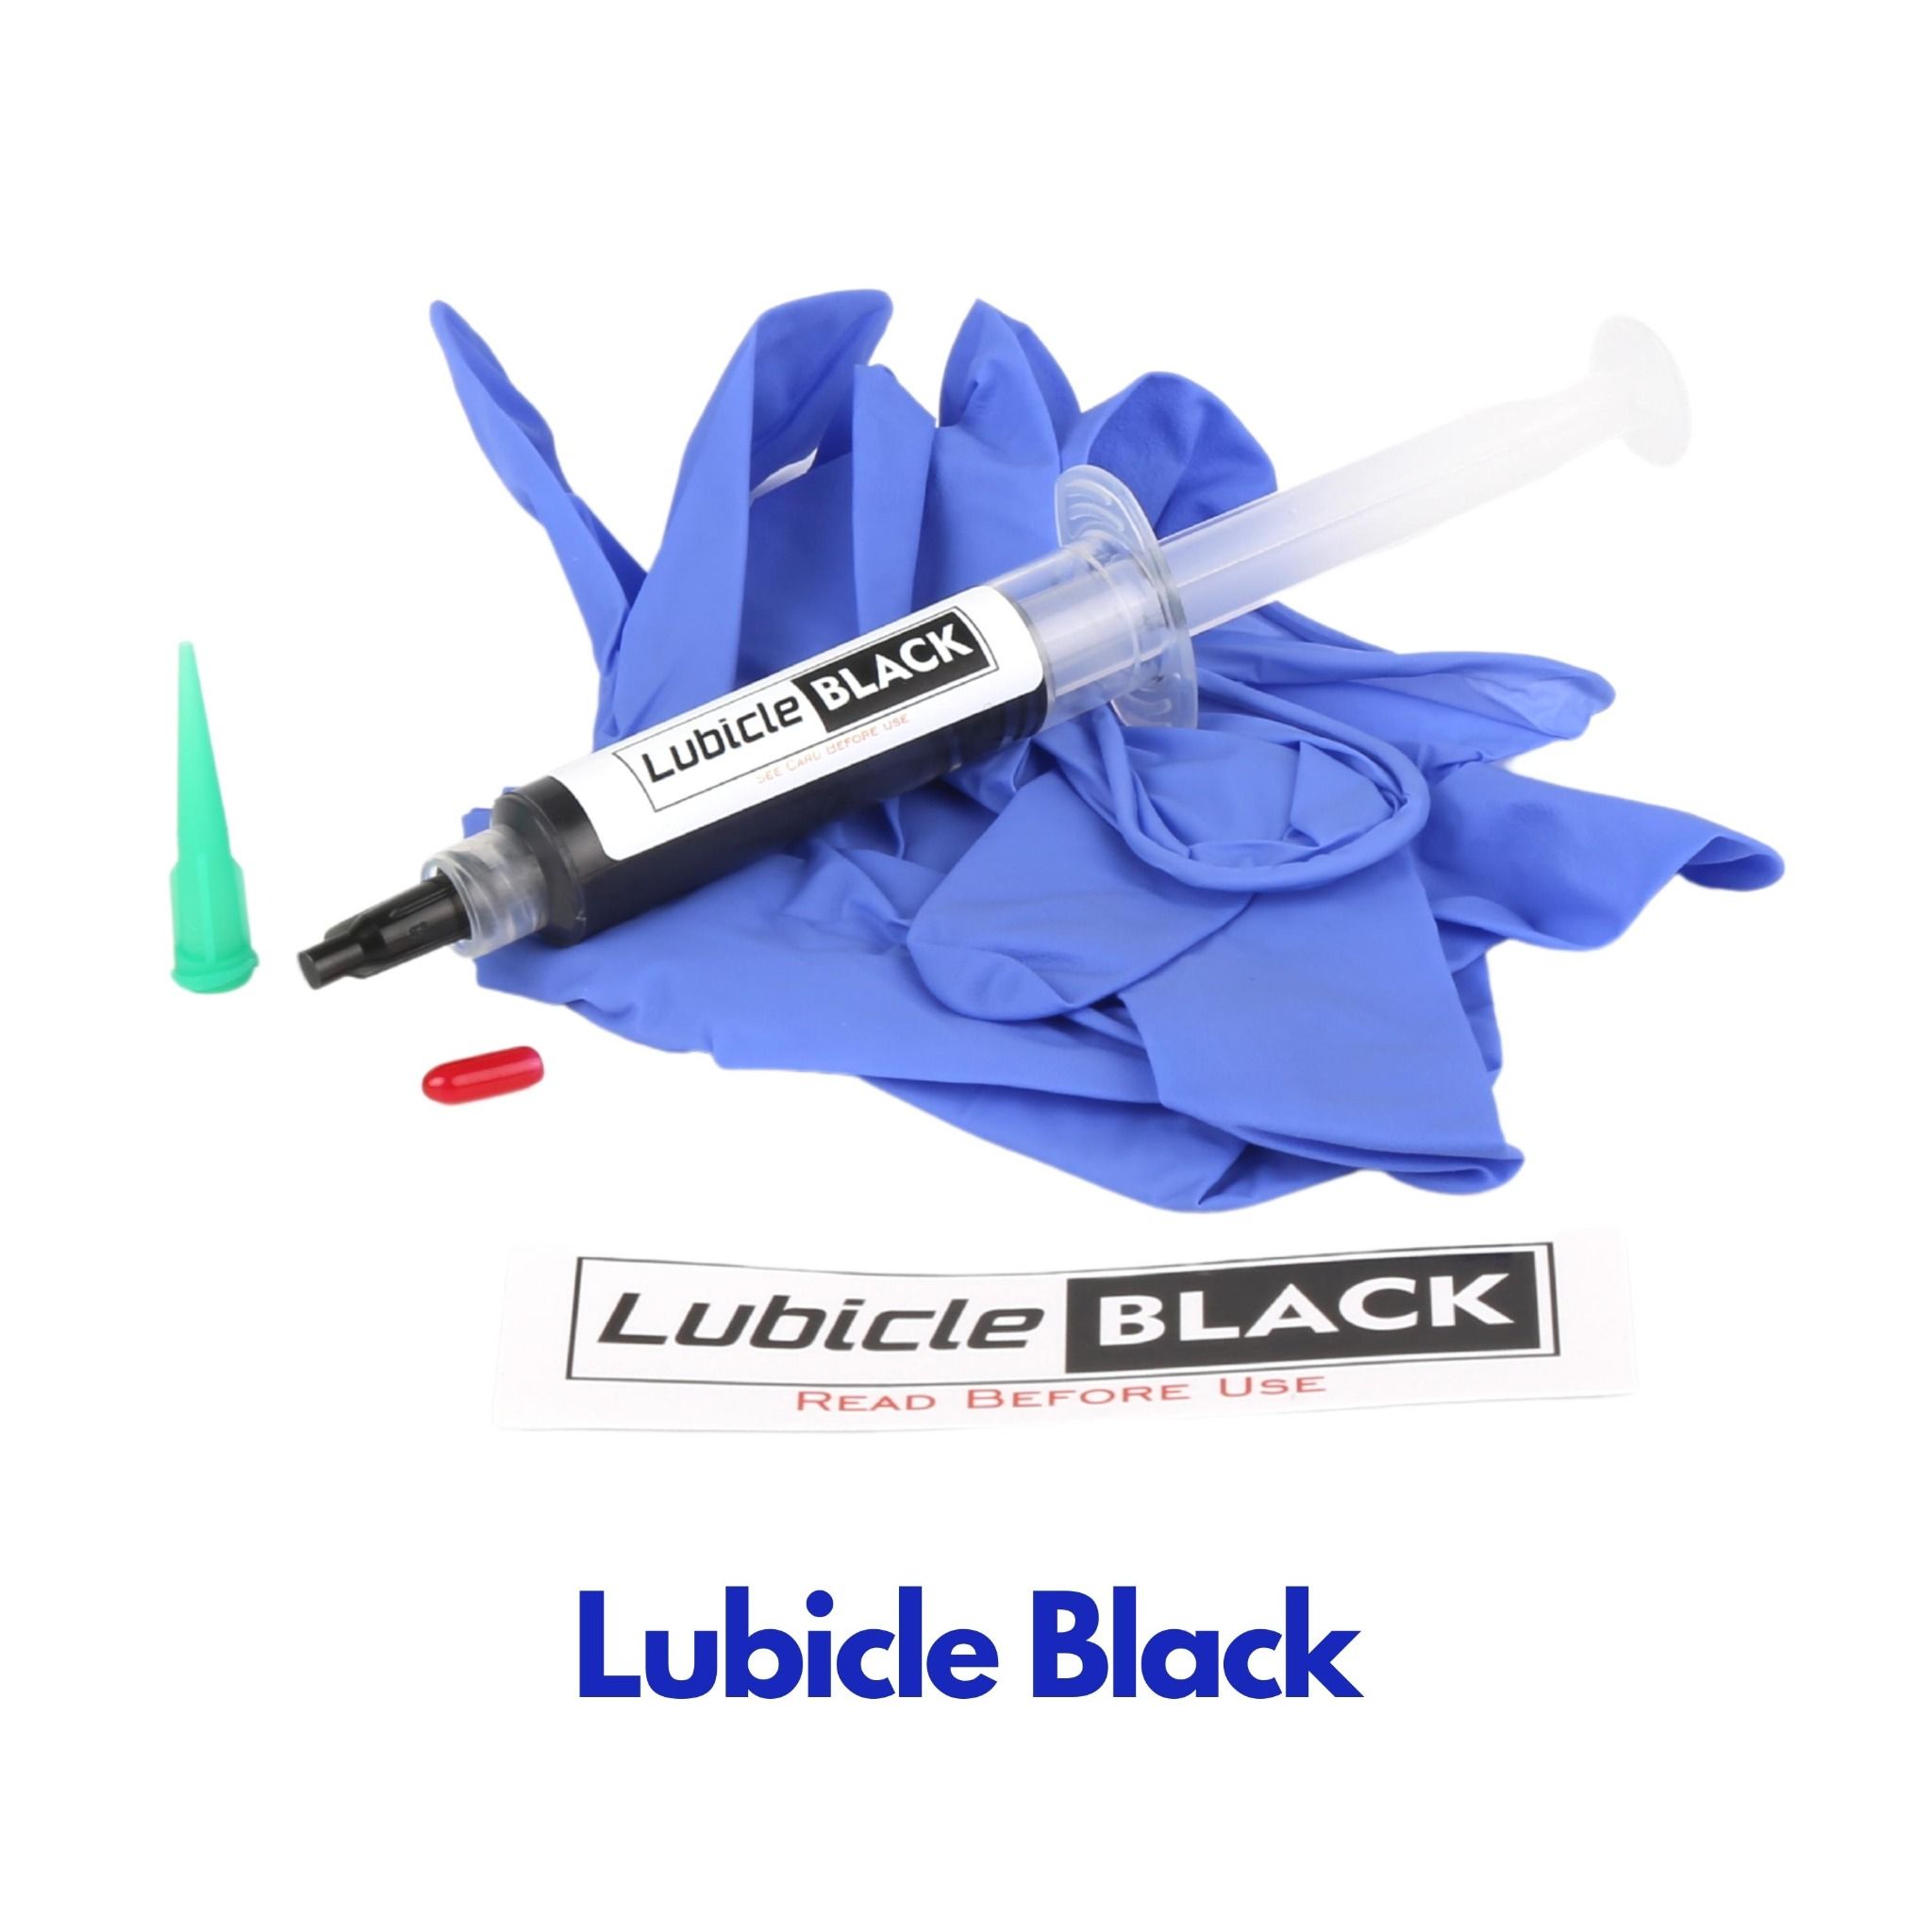  [Lube Rubik] Lubicle Black dầu bôi trơn core rubik (Thể tích 5cc) - Zyo Rubik 